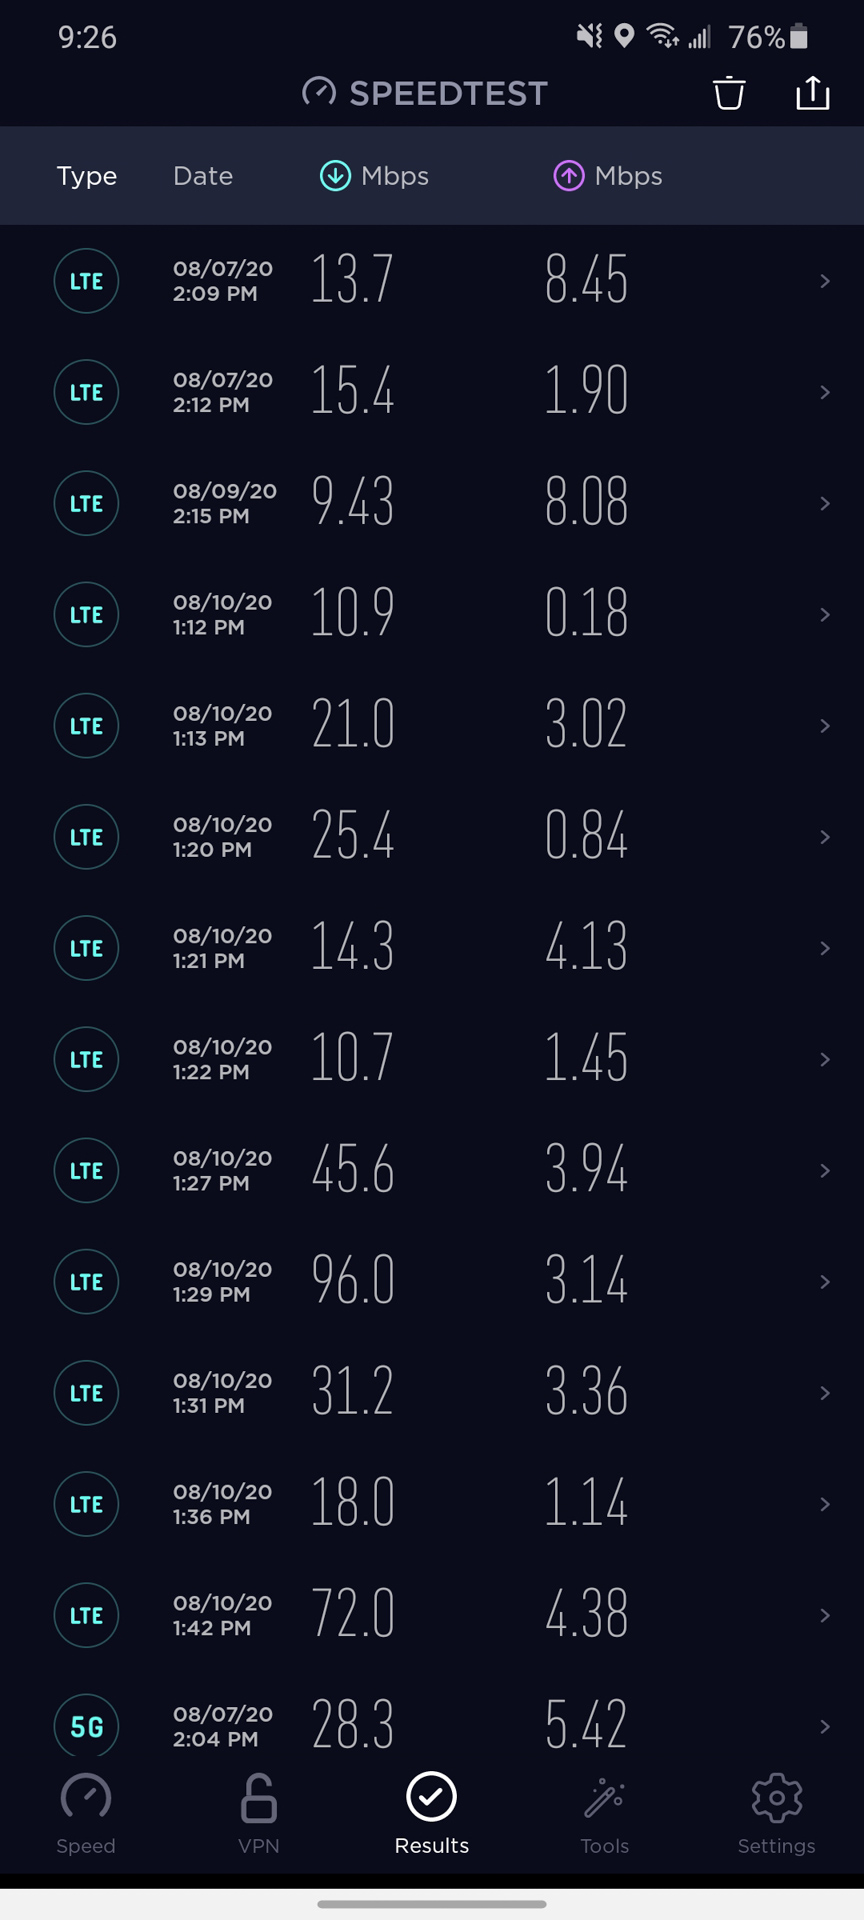 ATT LTE 4G速度测试结果